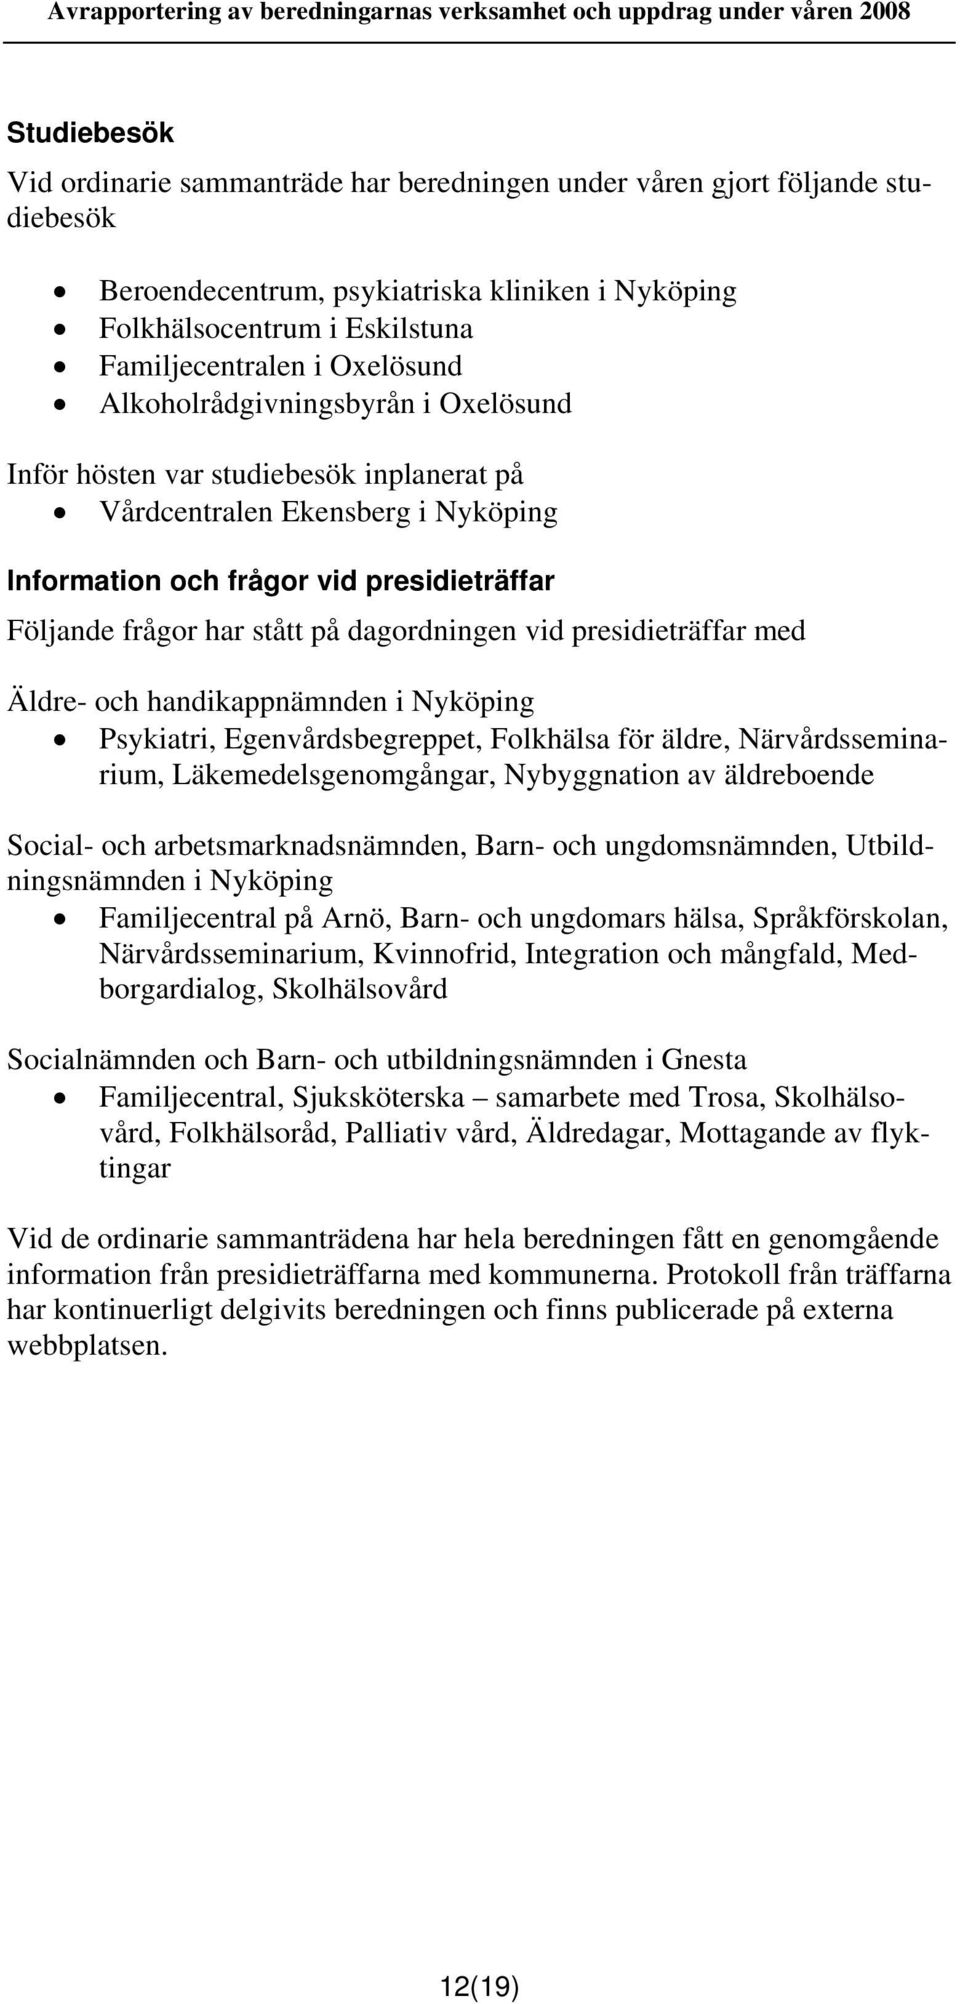 dagordningen vid presidieträffar med Äldre- och handikappnämnden i Nyköping Psykiatri, Egenvårdsbegreppet, Folkhälsa för äldre, Närvårdsseminarium, Läkemedelsgenomgångar, Nybyggnation av äldreboende